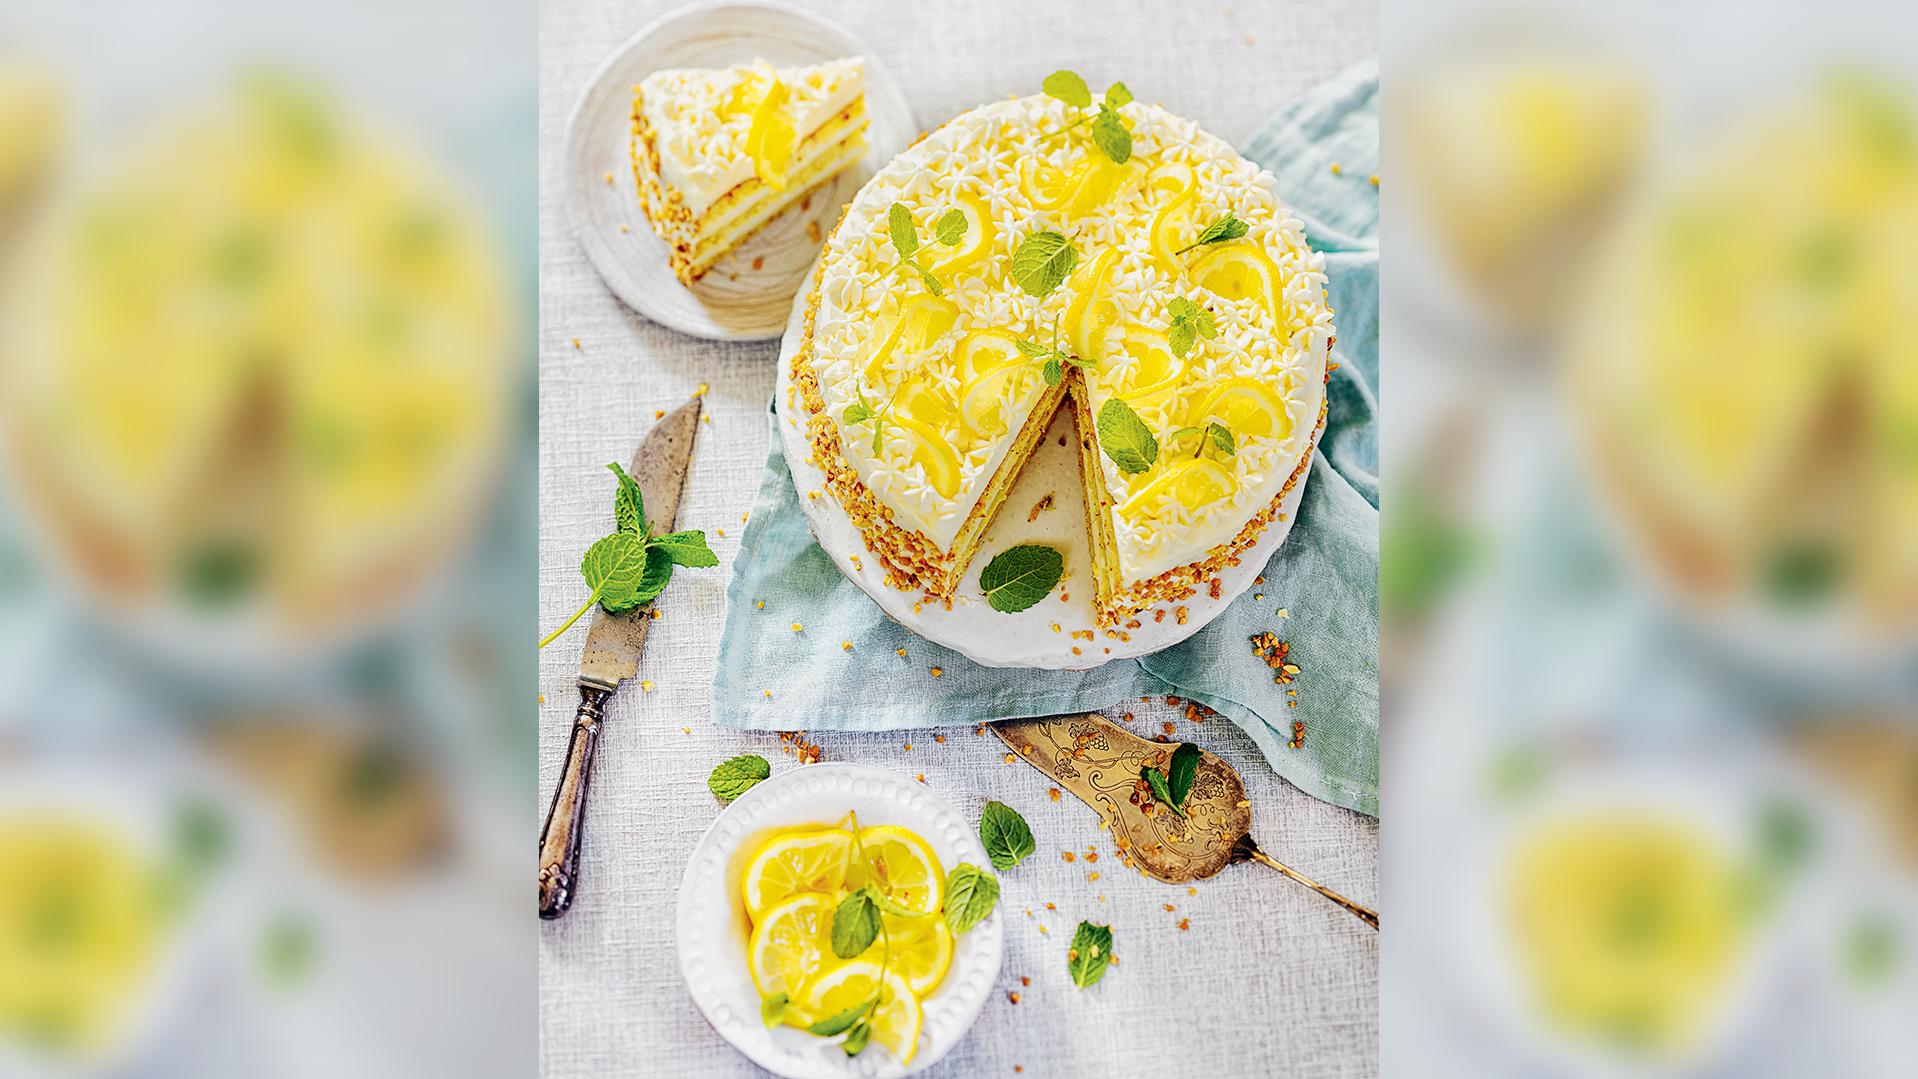 Die glutenfreie Zitronen-Nuss-Torte von Bloggerin Tanja Gruber.